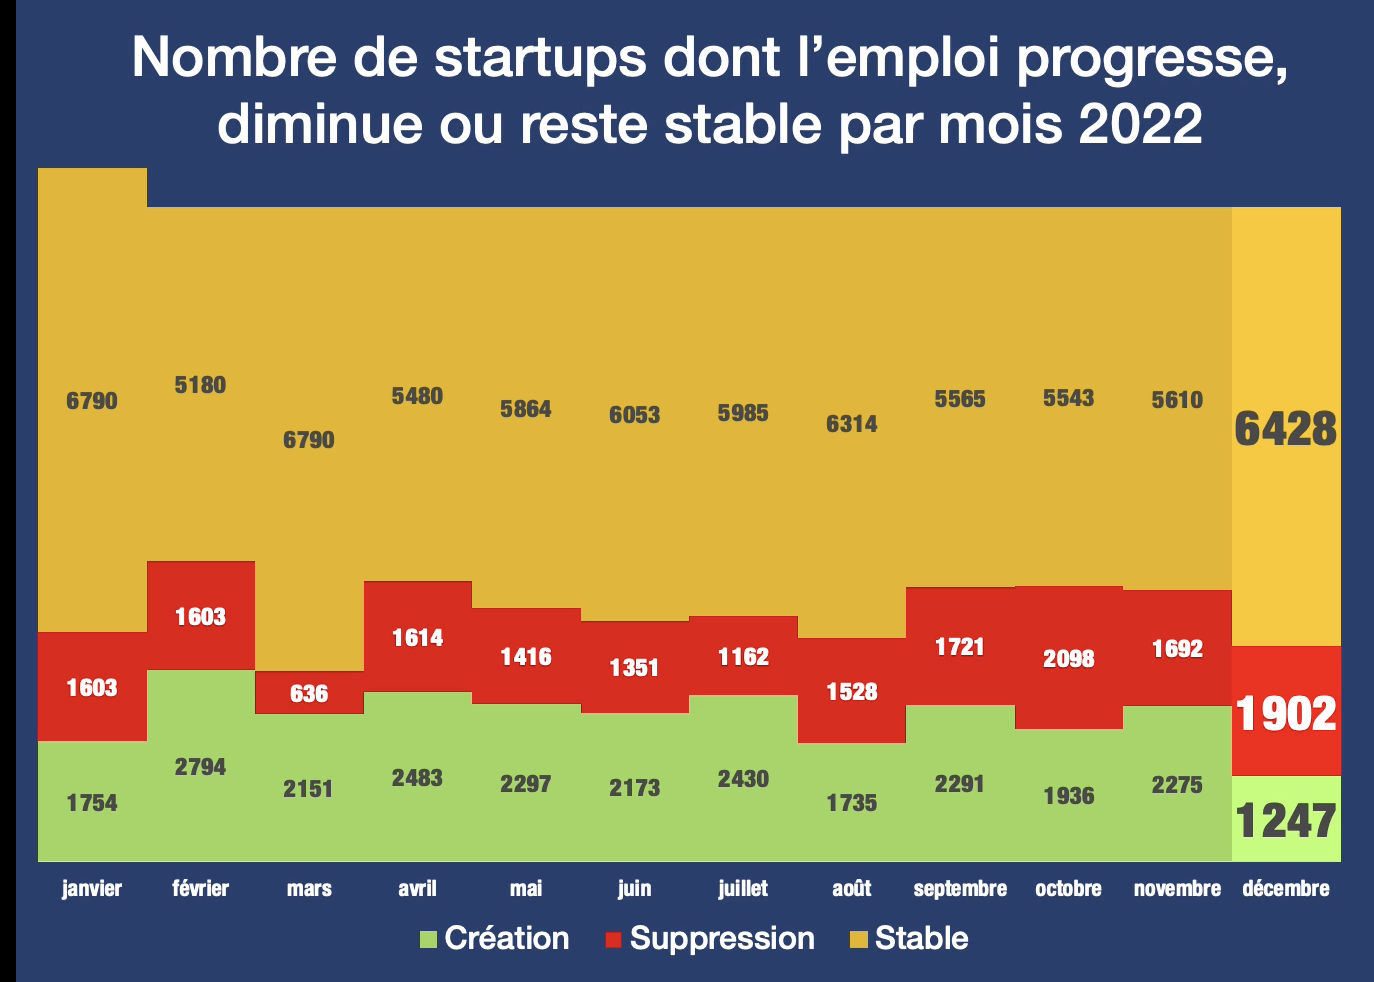 Bilan 2022 : l’emploi dans les startups en France progresse de +15% en 2022 malgré une inflexion en décembre